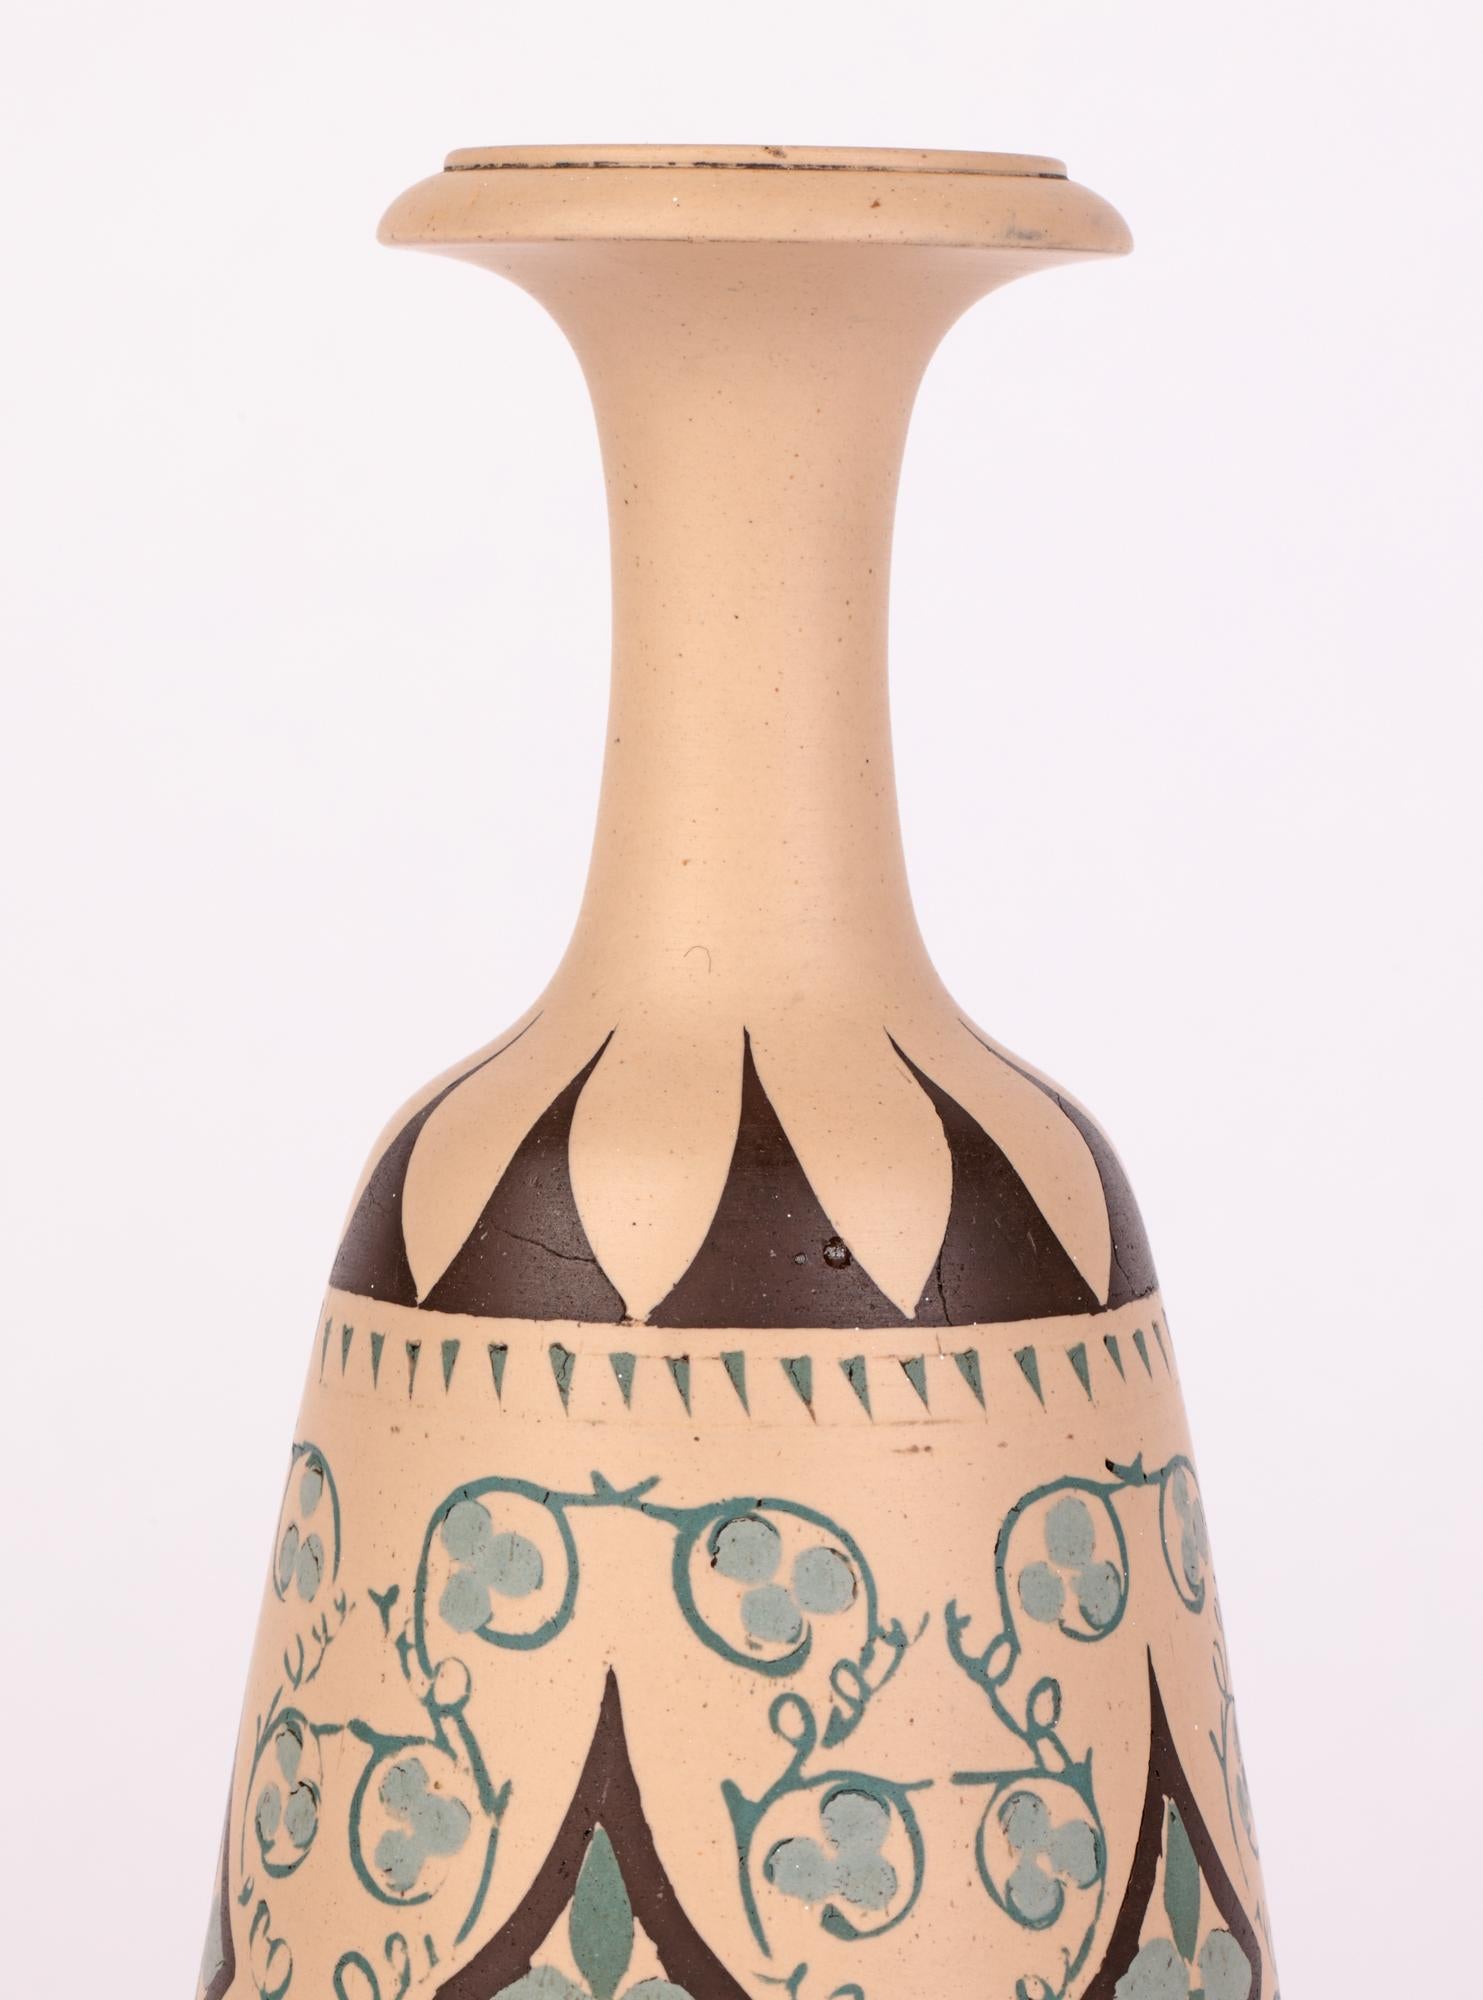 Un très inhabituel vase en grès Lambeth de Doulton, cuit en biscuit, peint à la main au pigment avec des feuillages stylisés et des motifs géométriques par Minnie G Thompson et daté de 1883. Le grand vase repose sur un large pied rond sur piédestal,